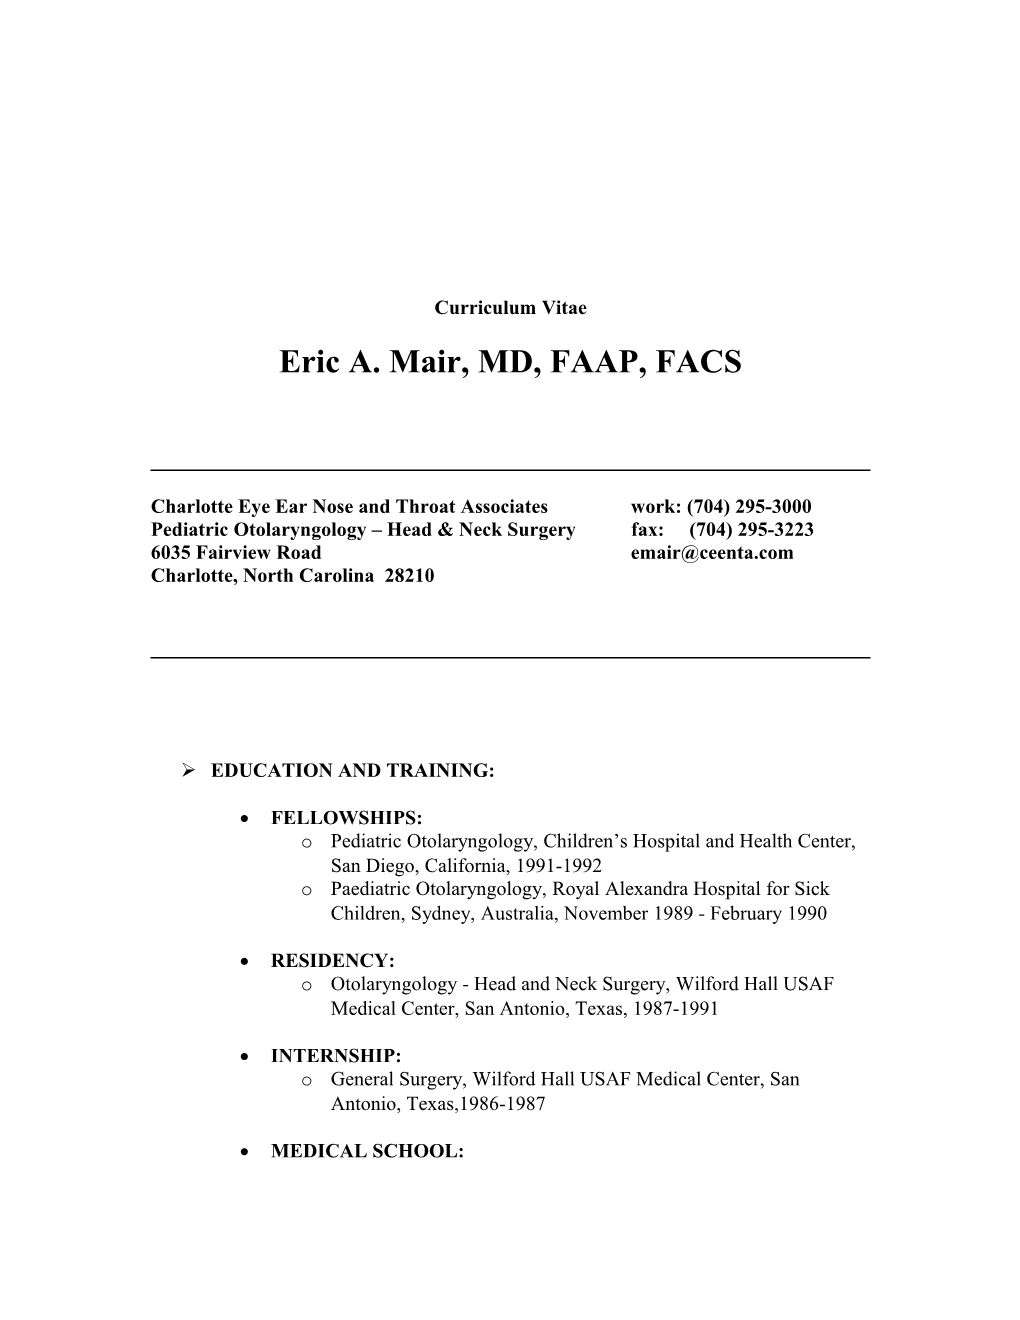 Eric A. Mair, MD, FAAP, FACS